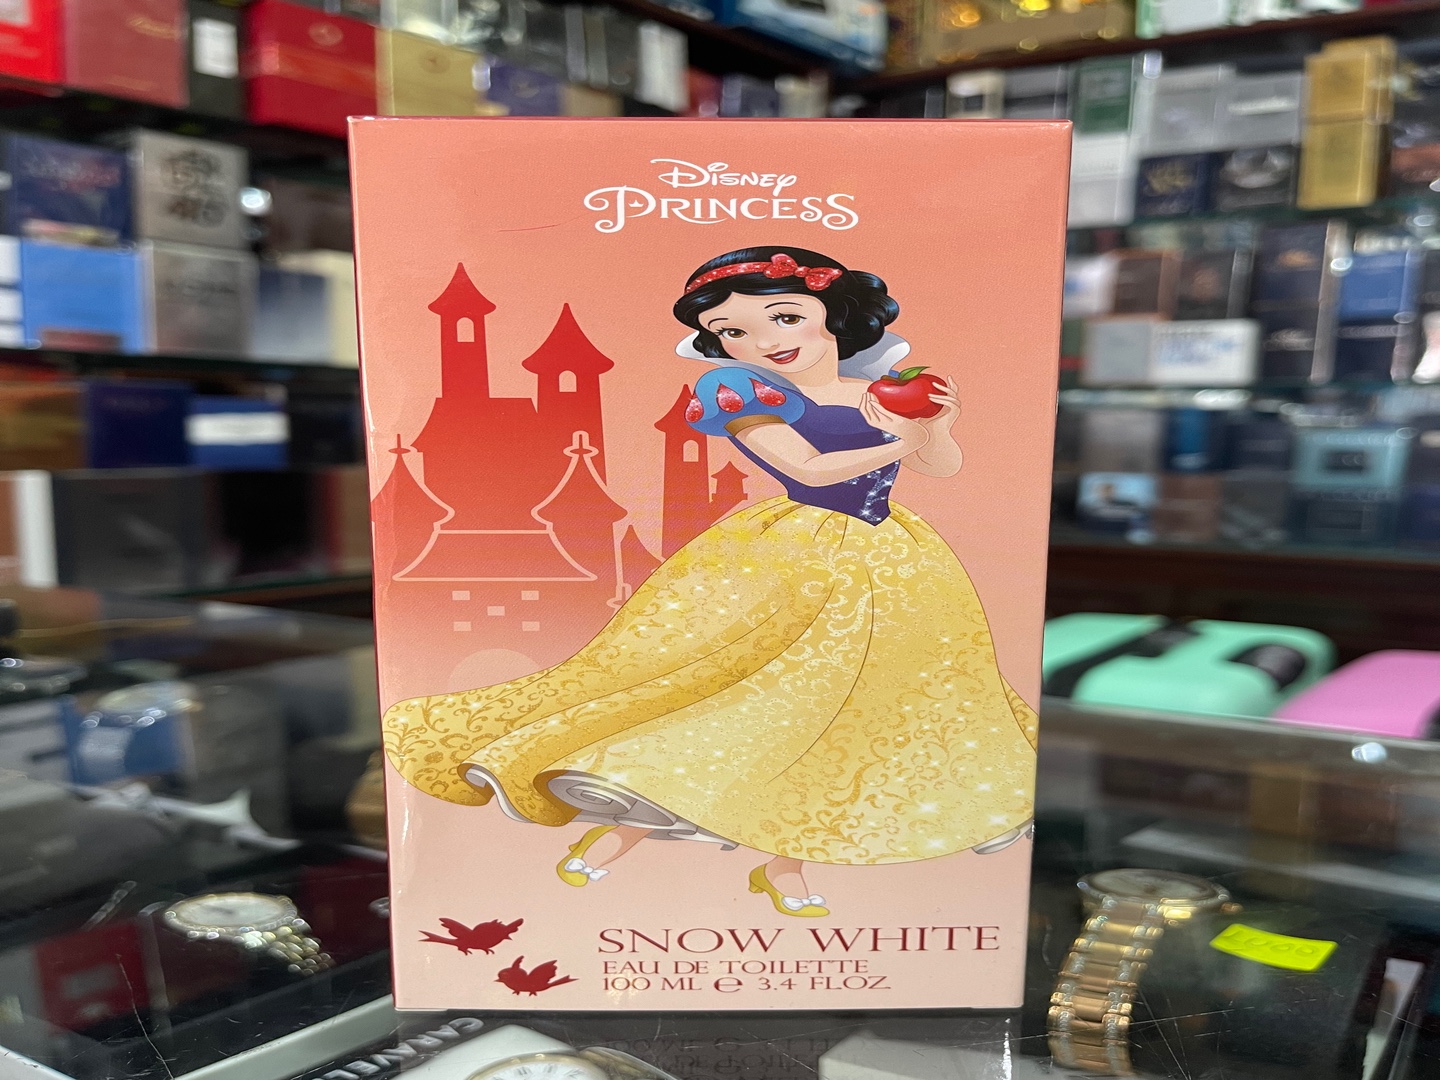 accesorios - Perfume Disney Princess “Blanca Nieves” 3.4OZ - AL POR MAYOR Y AL DETALLE 0